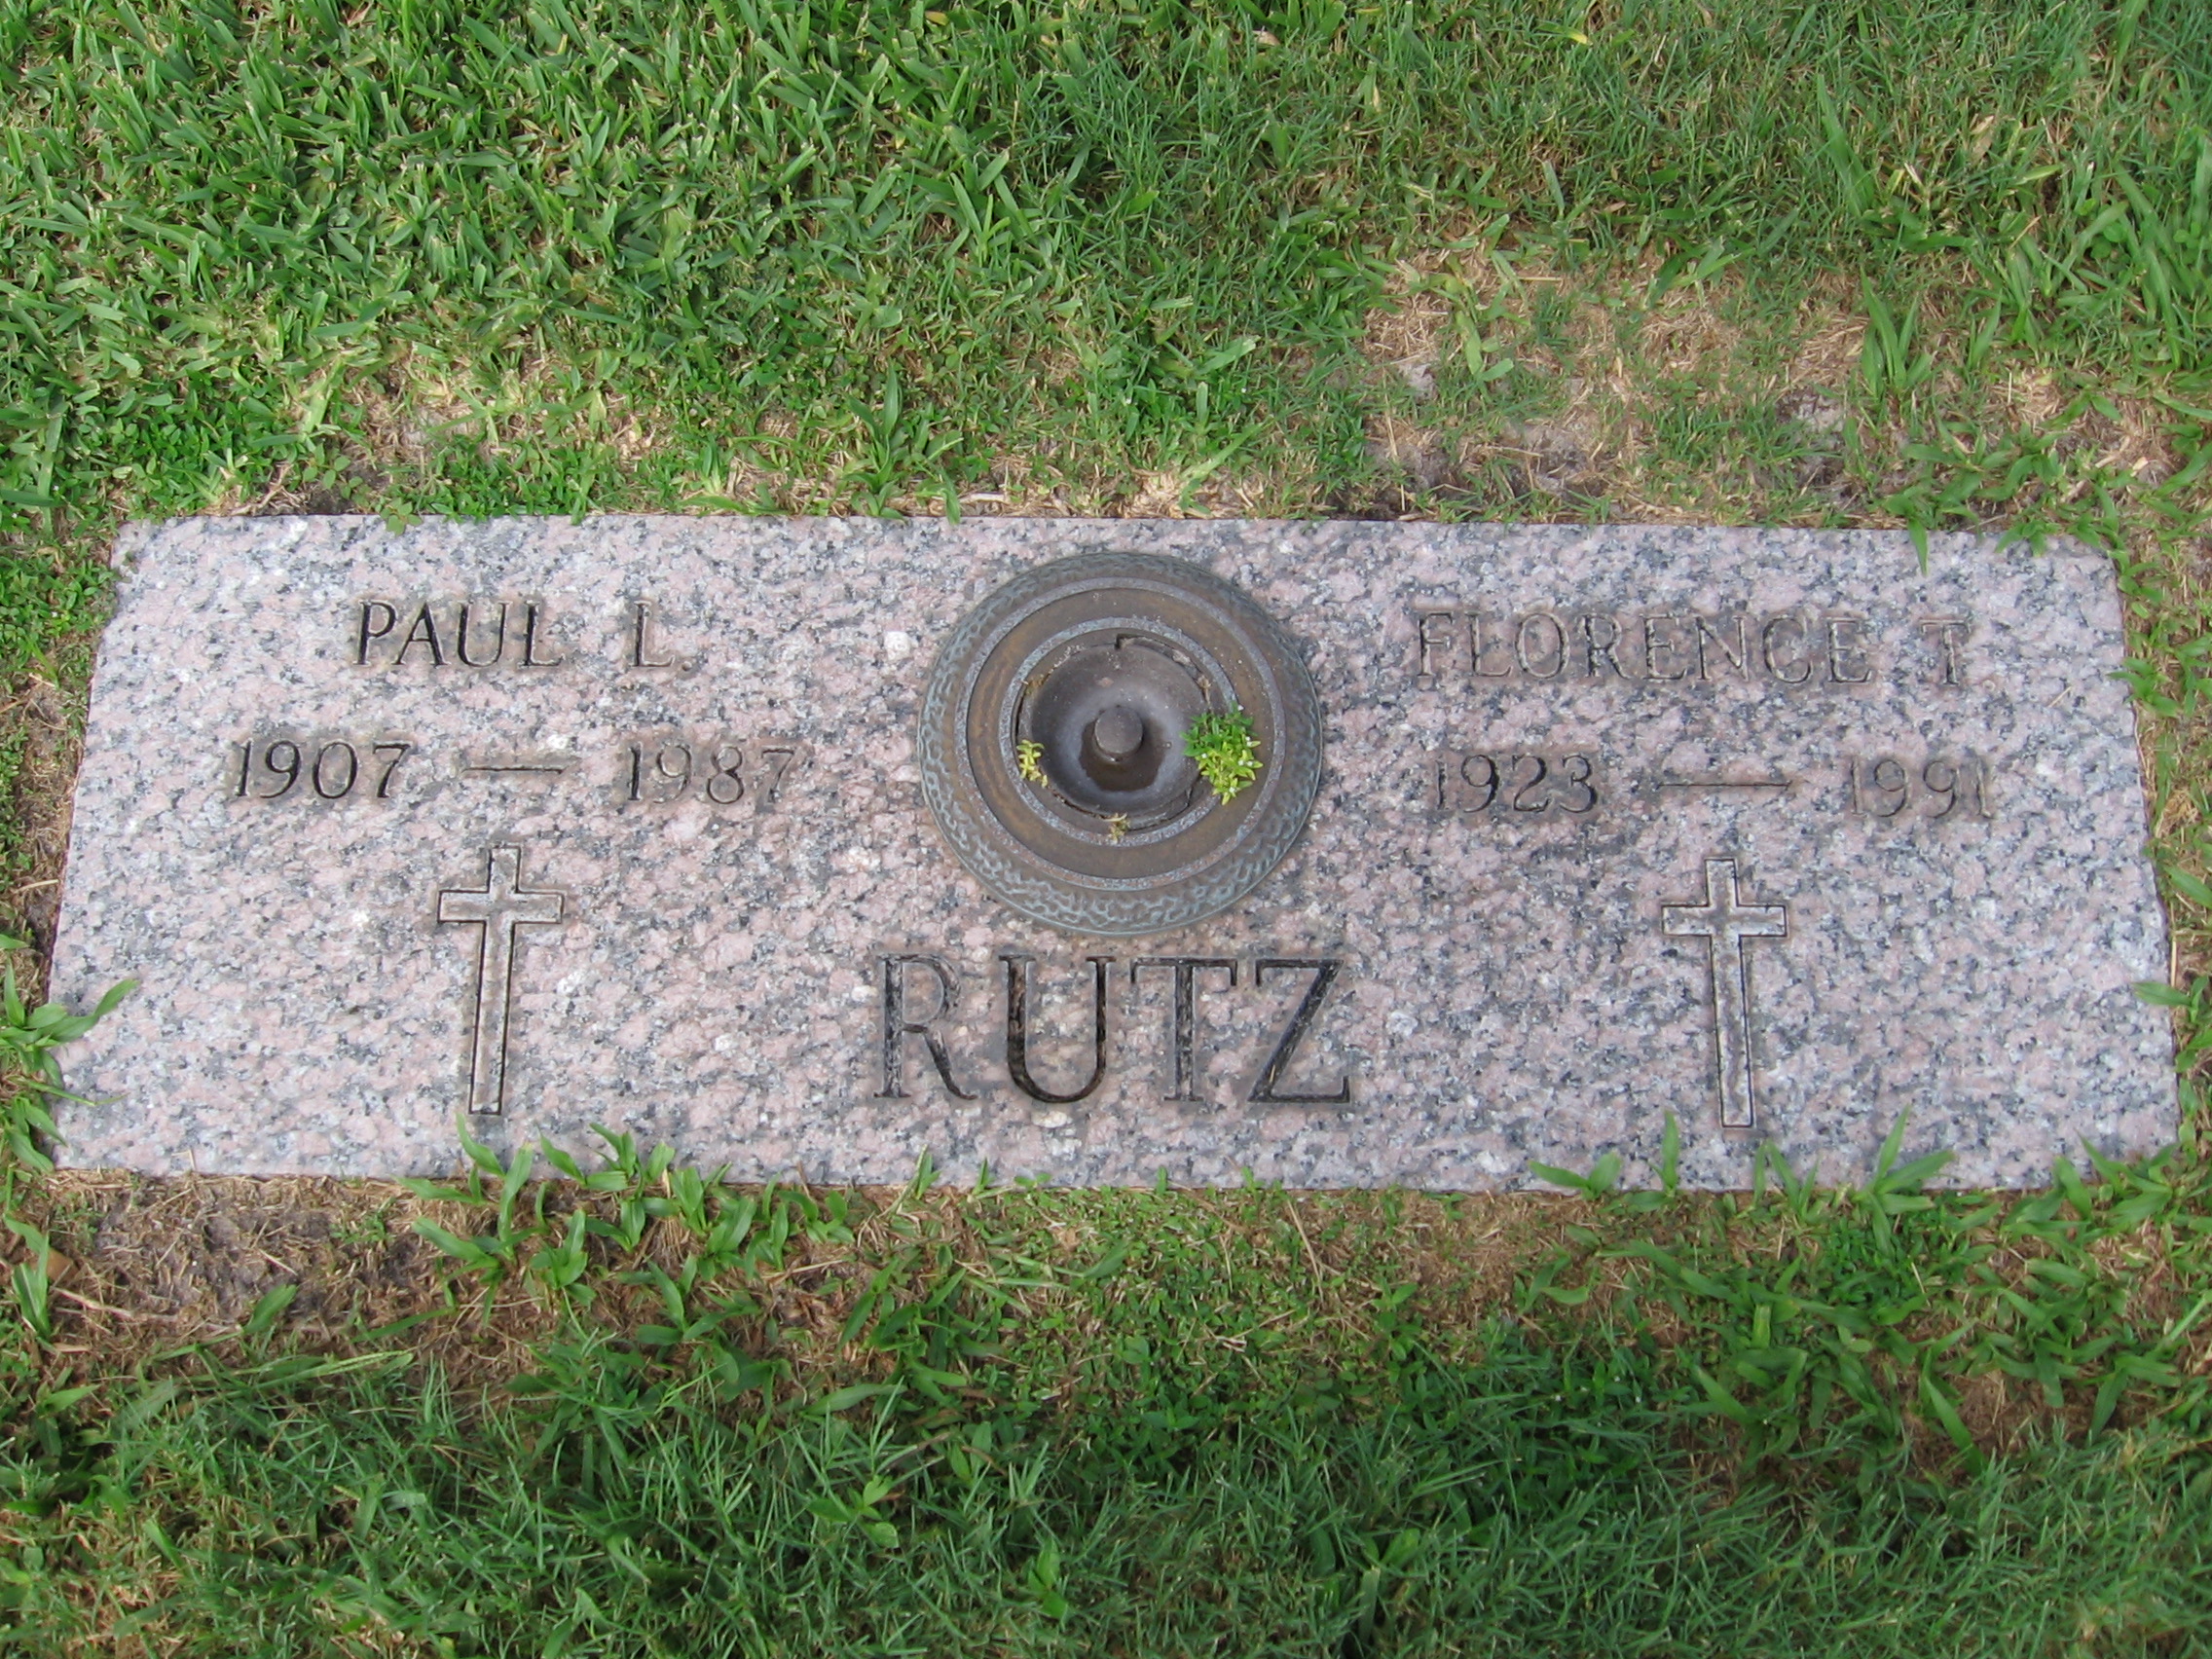 Paul L Rutz